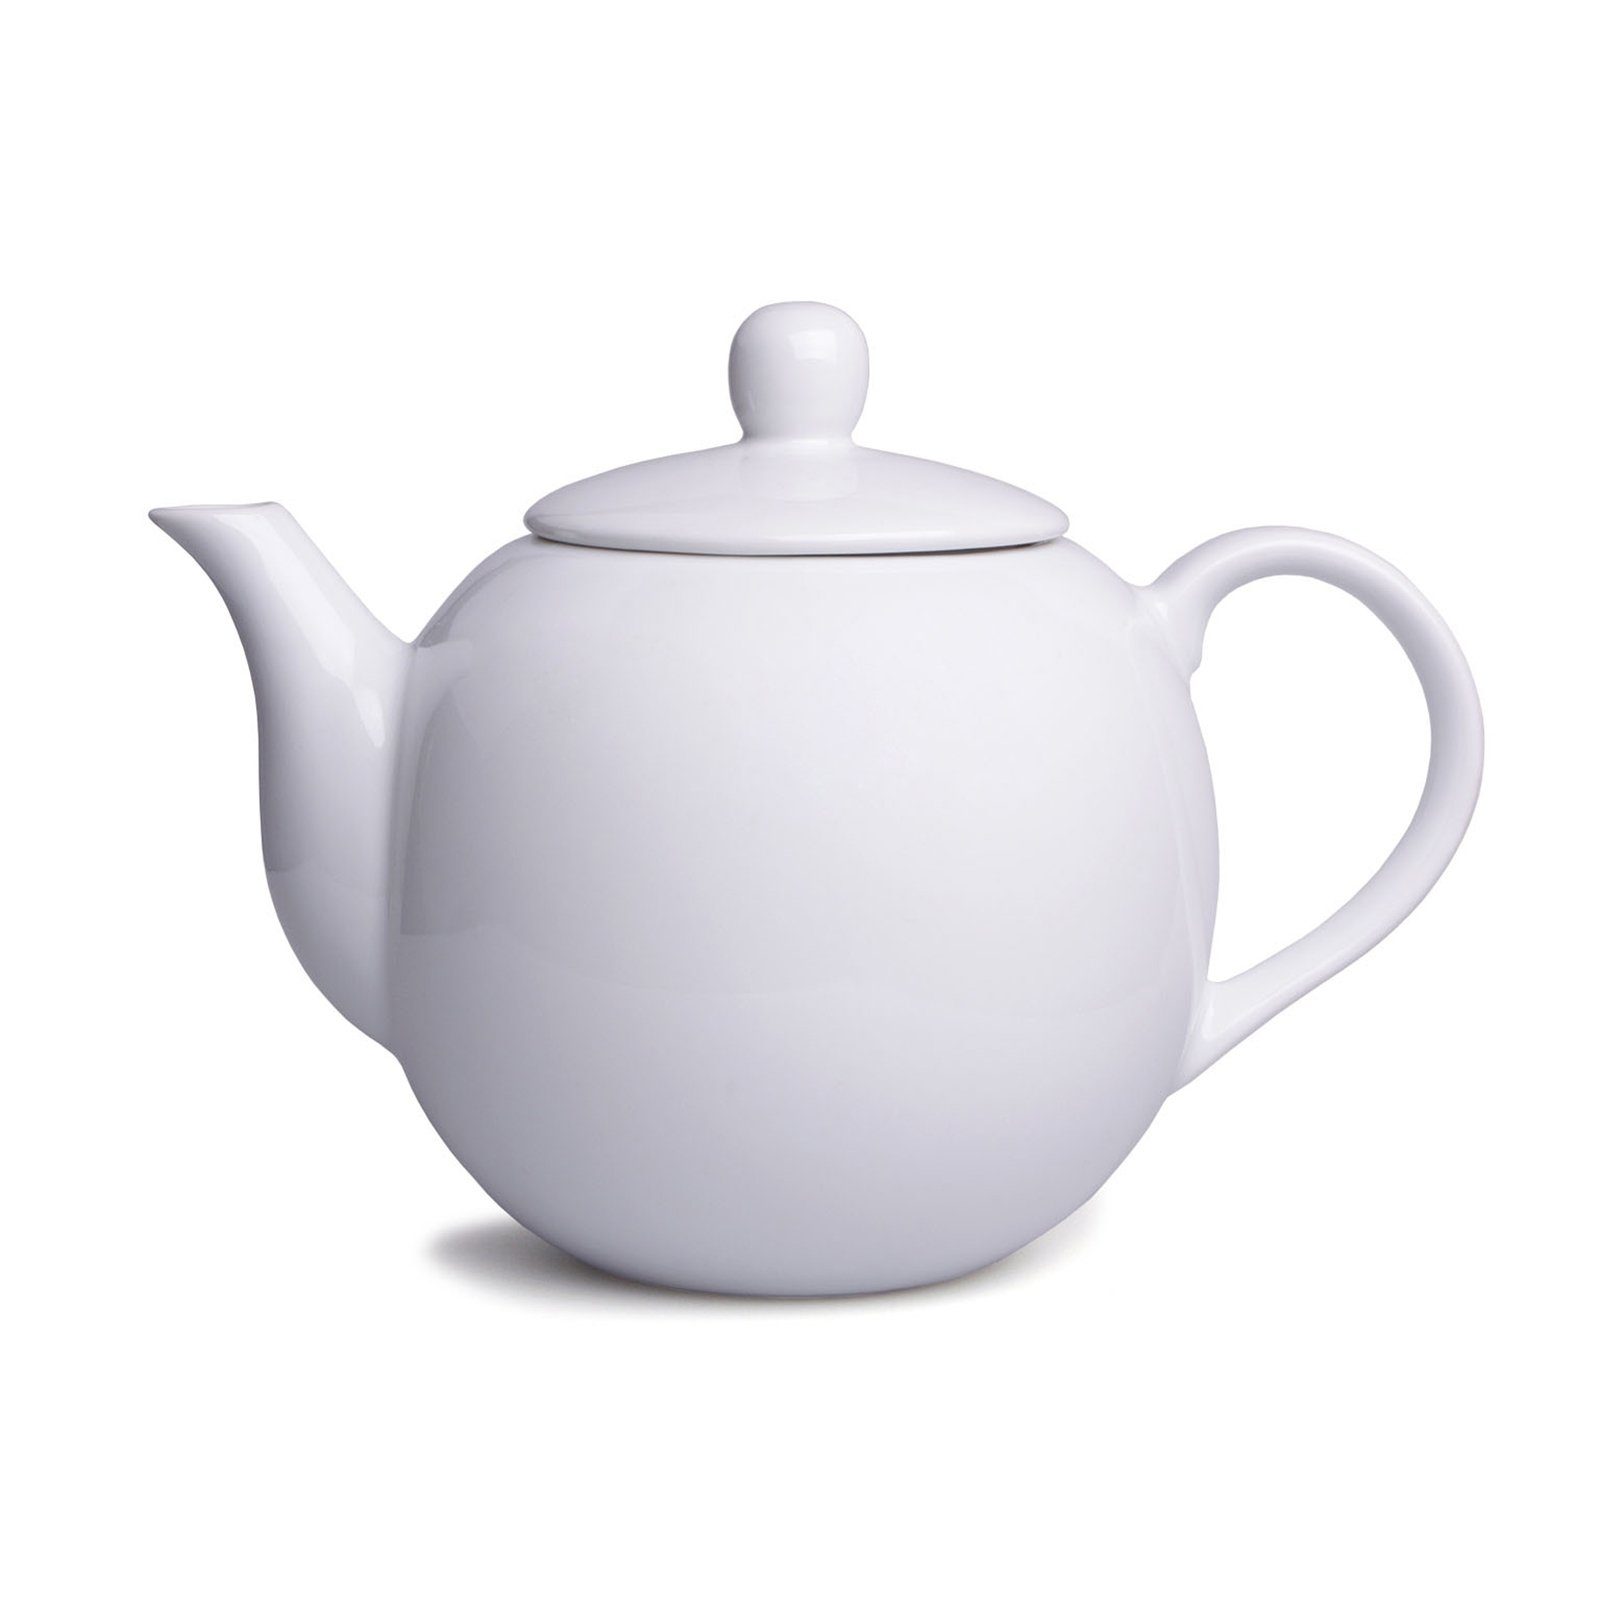 l, Neuetischkultur Teekanne Weiß Teekanne Kanne Vintage Porzellan, Porzellan 1.1